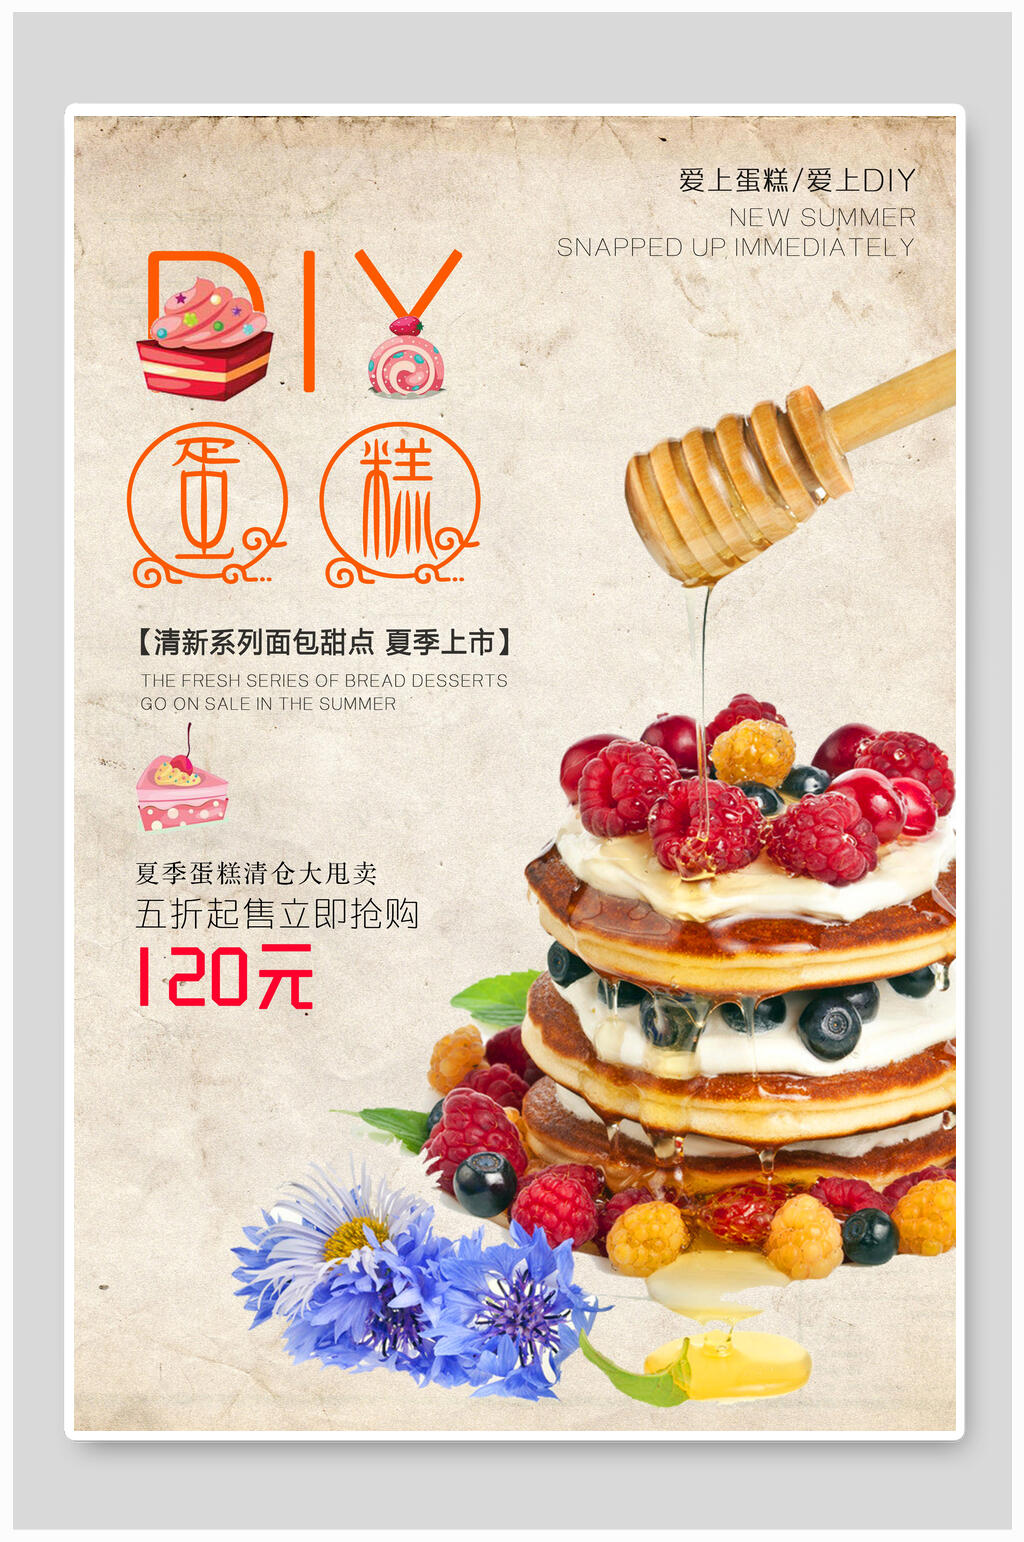 蛋糕店创意海报素材免费下载,本作品是由王炸上传的原创平面广告素材